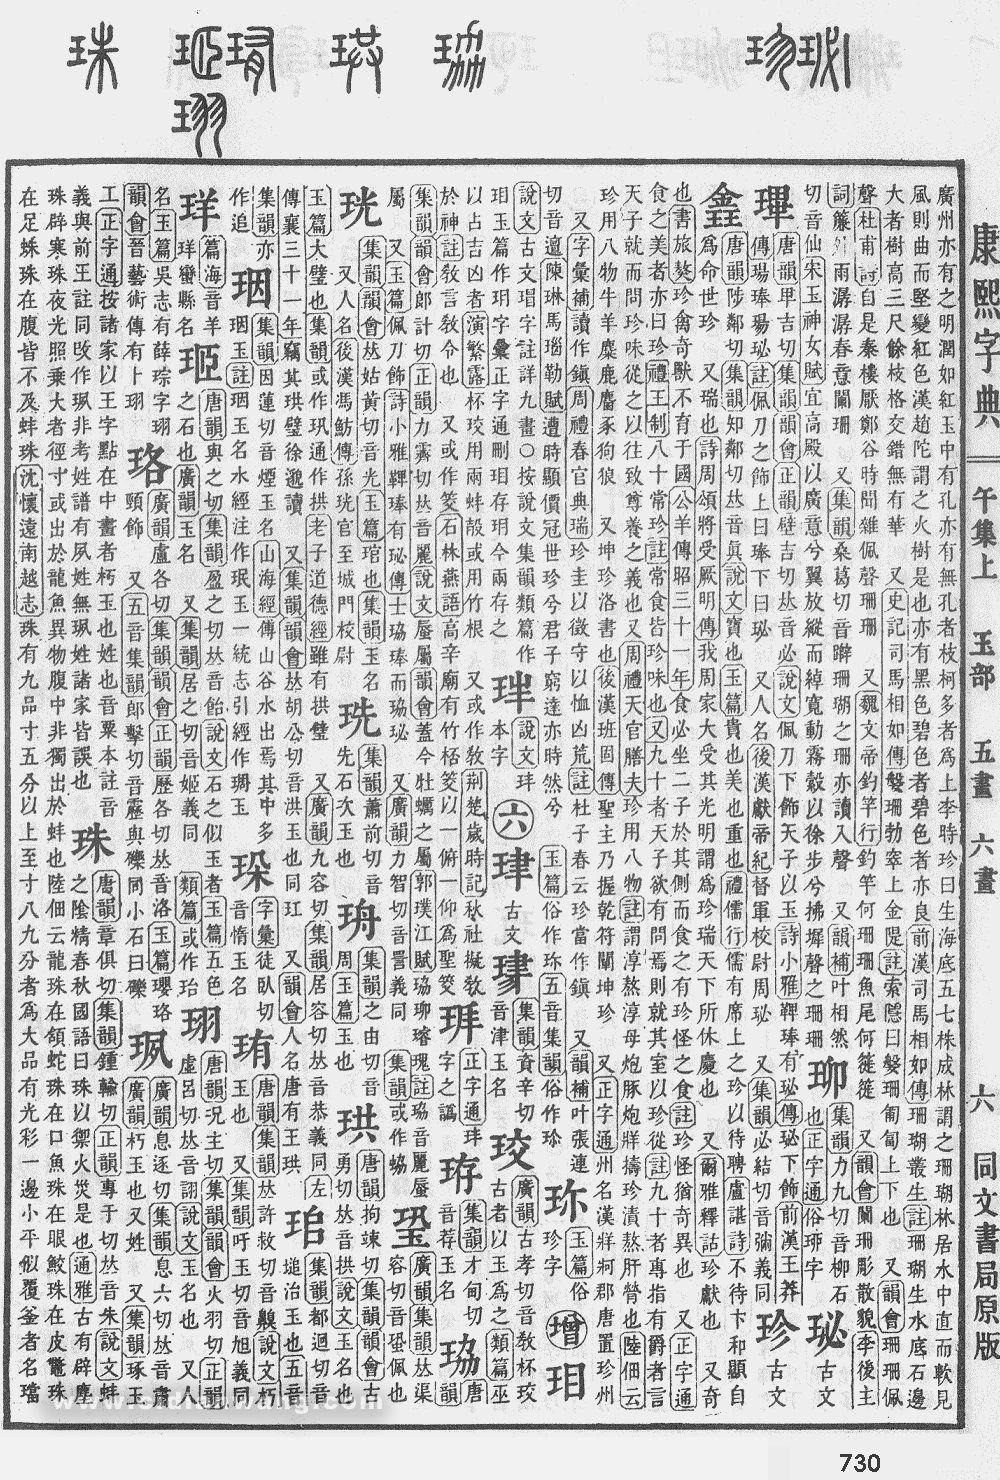 康熙字典掃描版第730頁